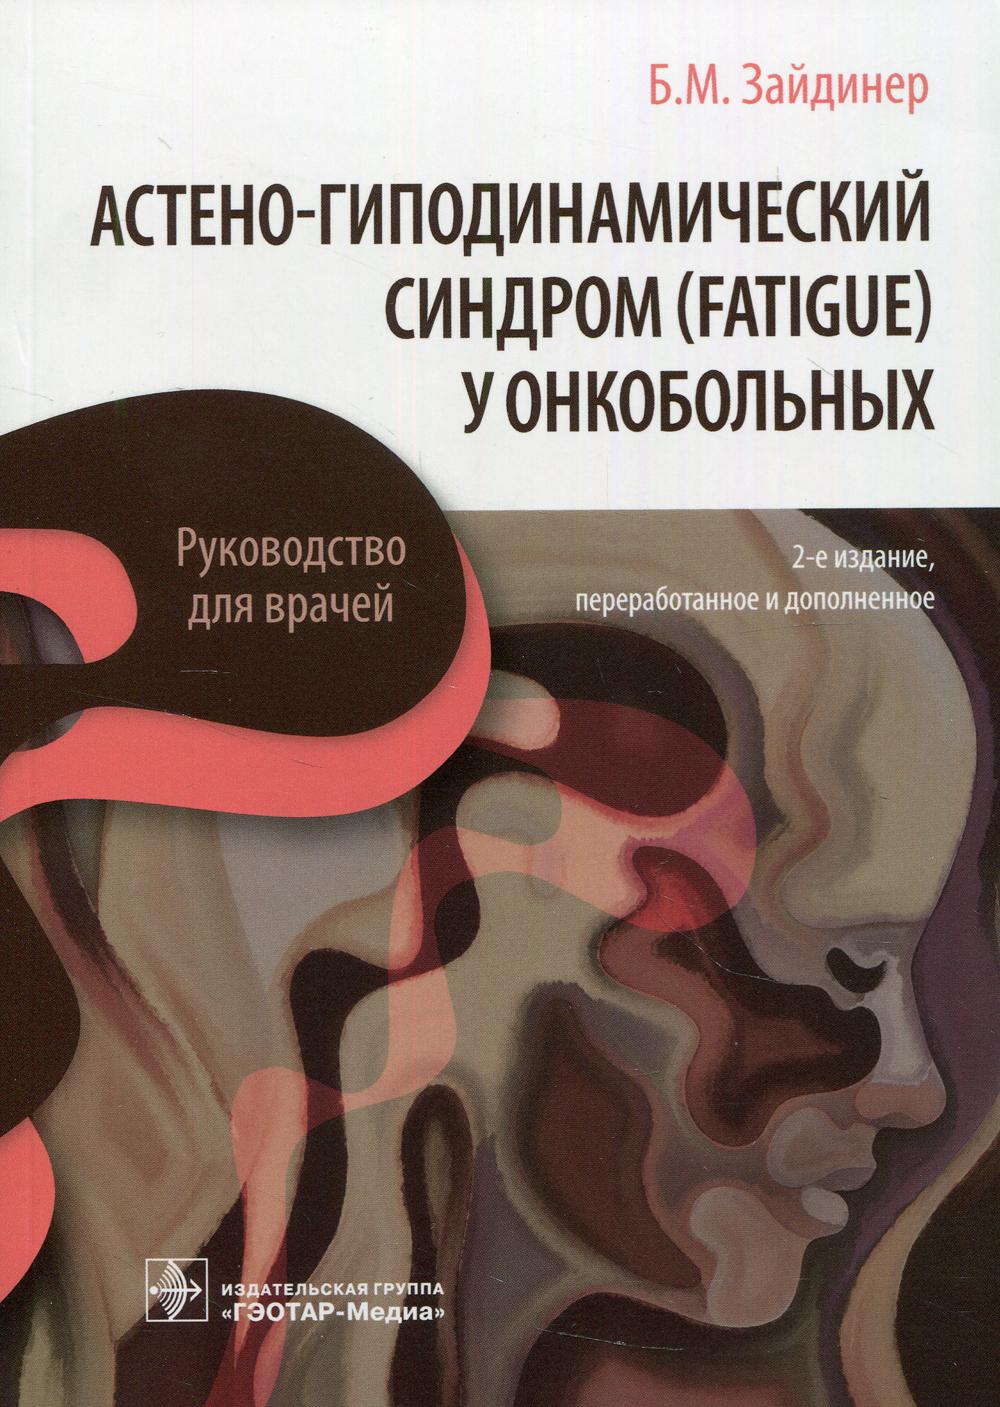 Астено-гиподинамический синдром (fatigue) у онкобольных : руководство для врачей. 2-е изд., перераб. и доп